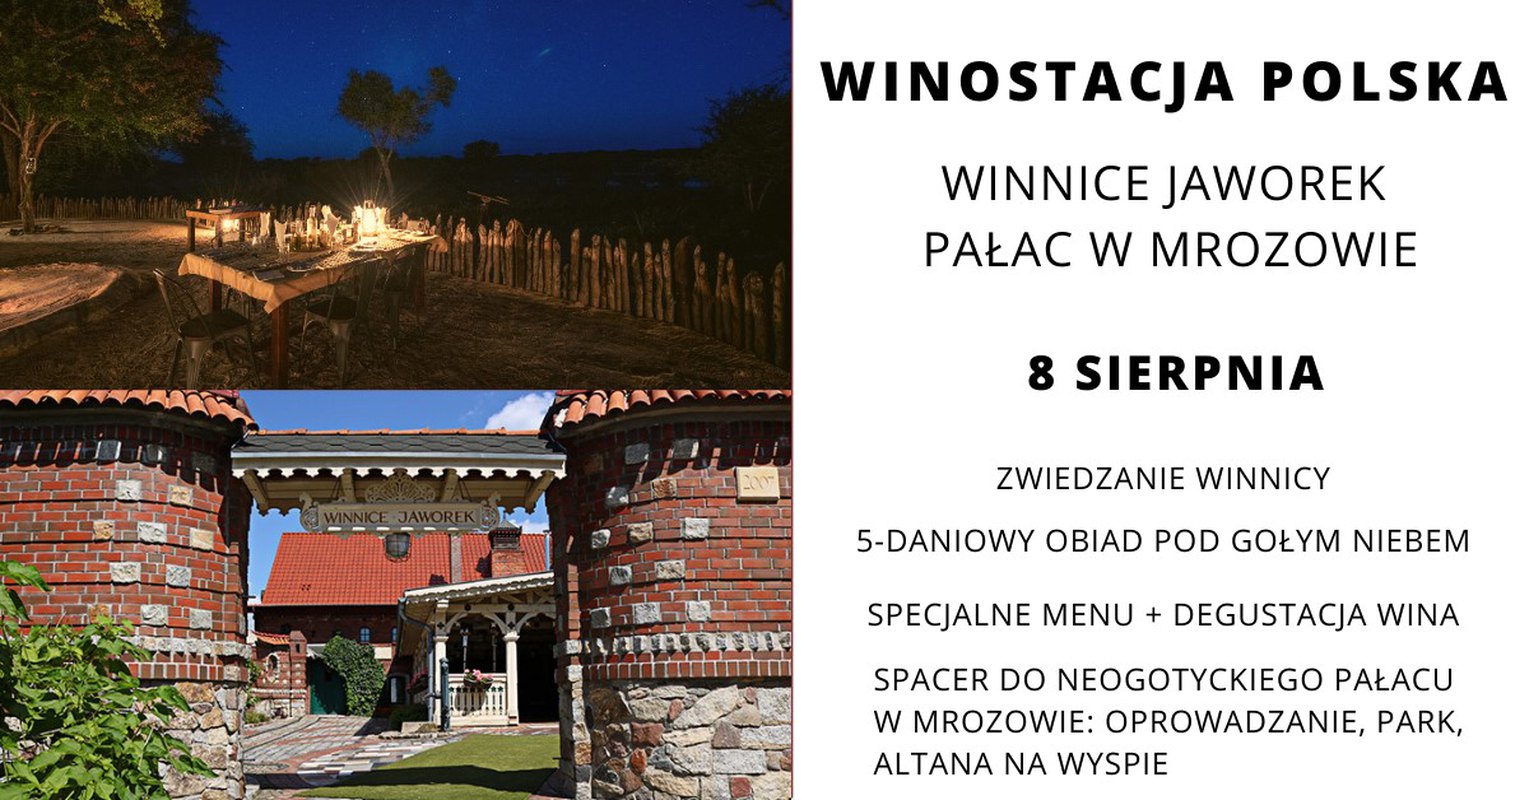 Winostacja Polska: Winnice Jaworek, Pałac w Mrozowie